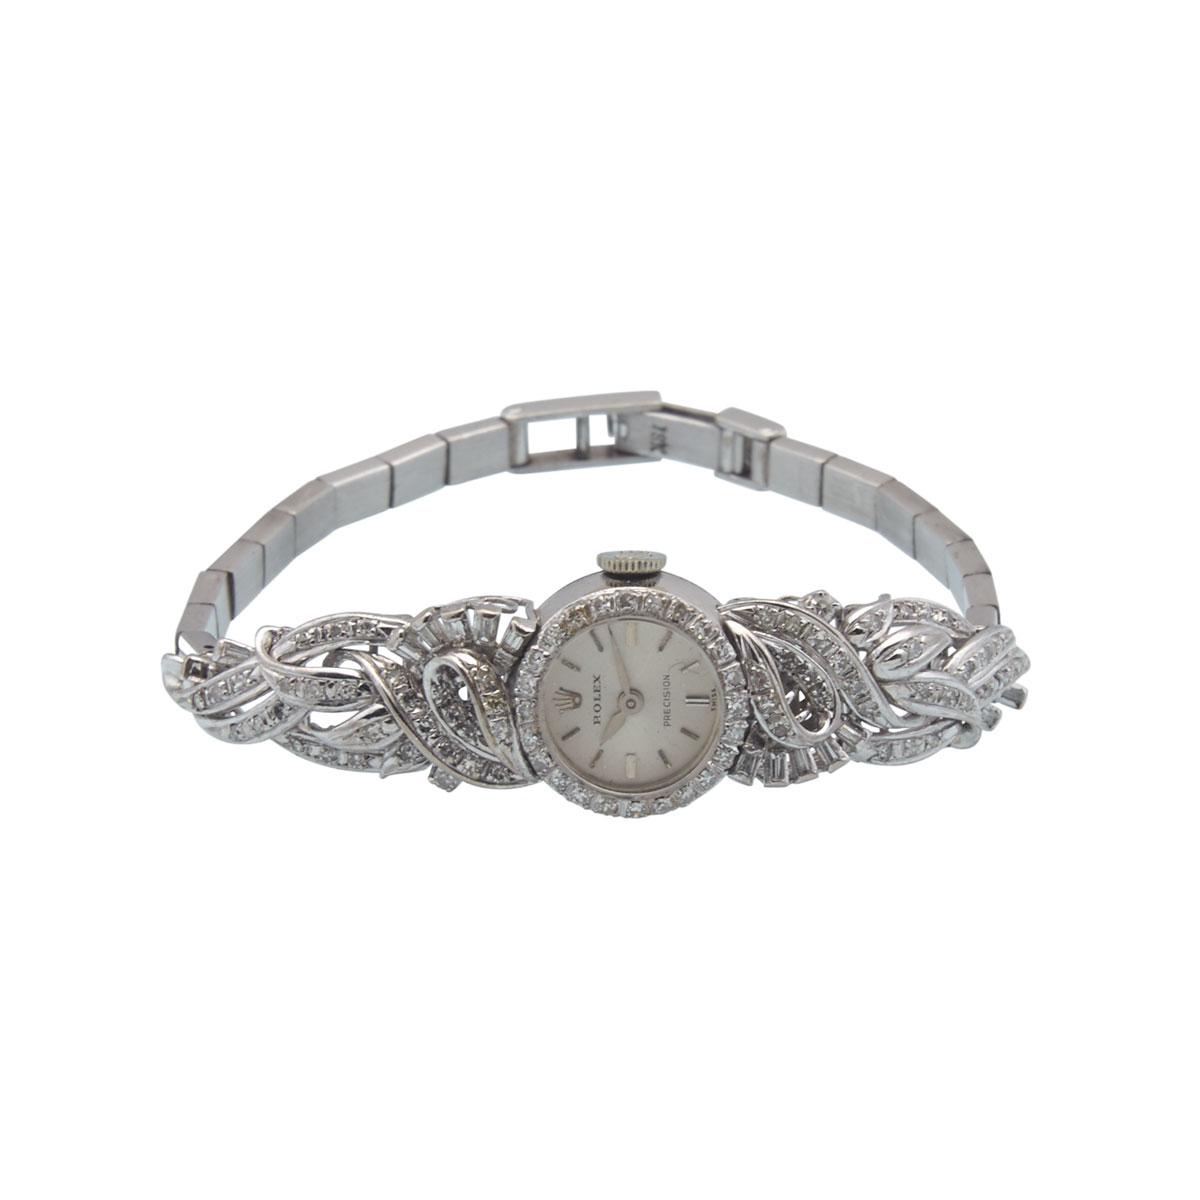 Lady’s Rolex “Precision” Wristwatch